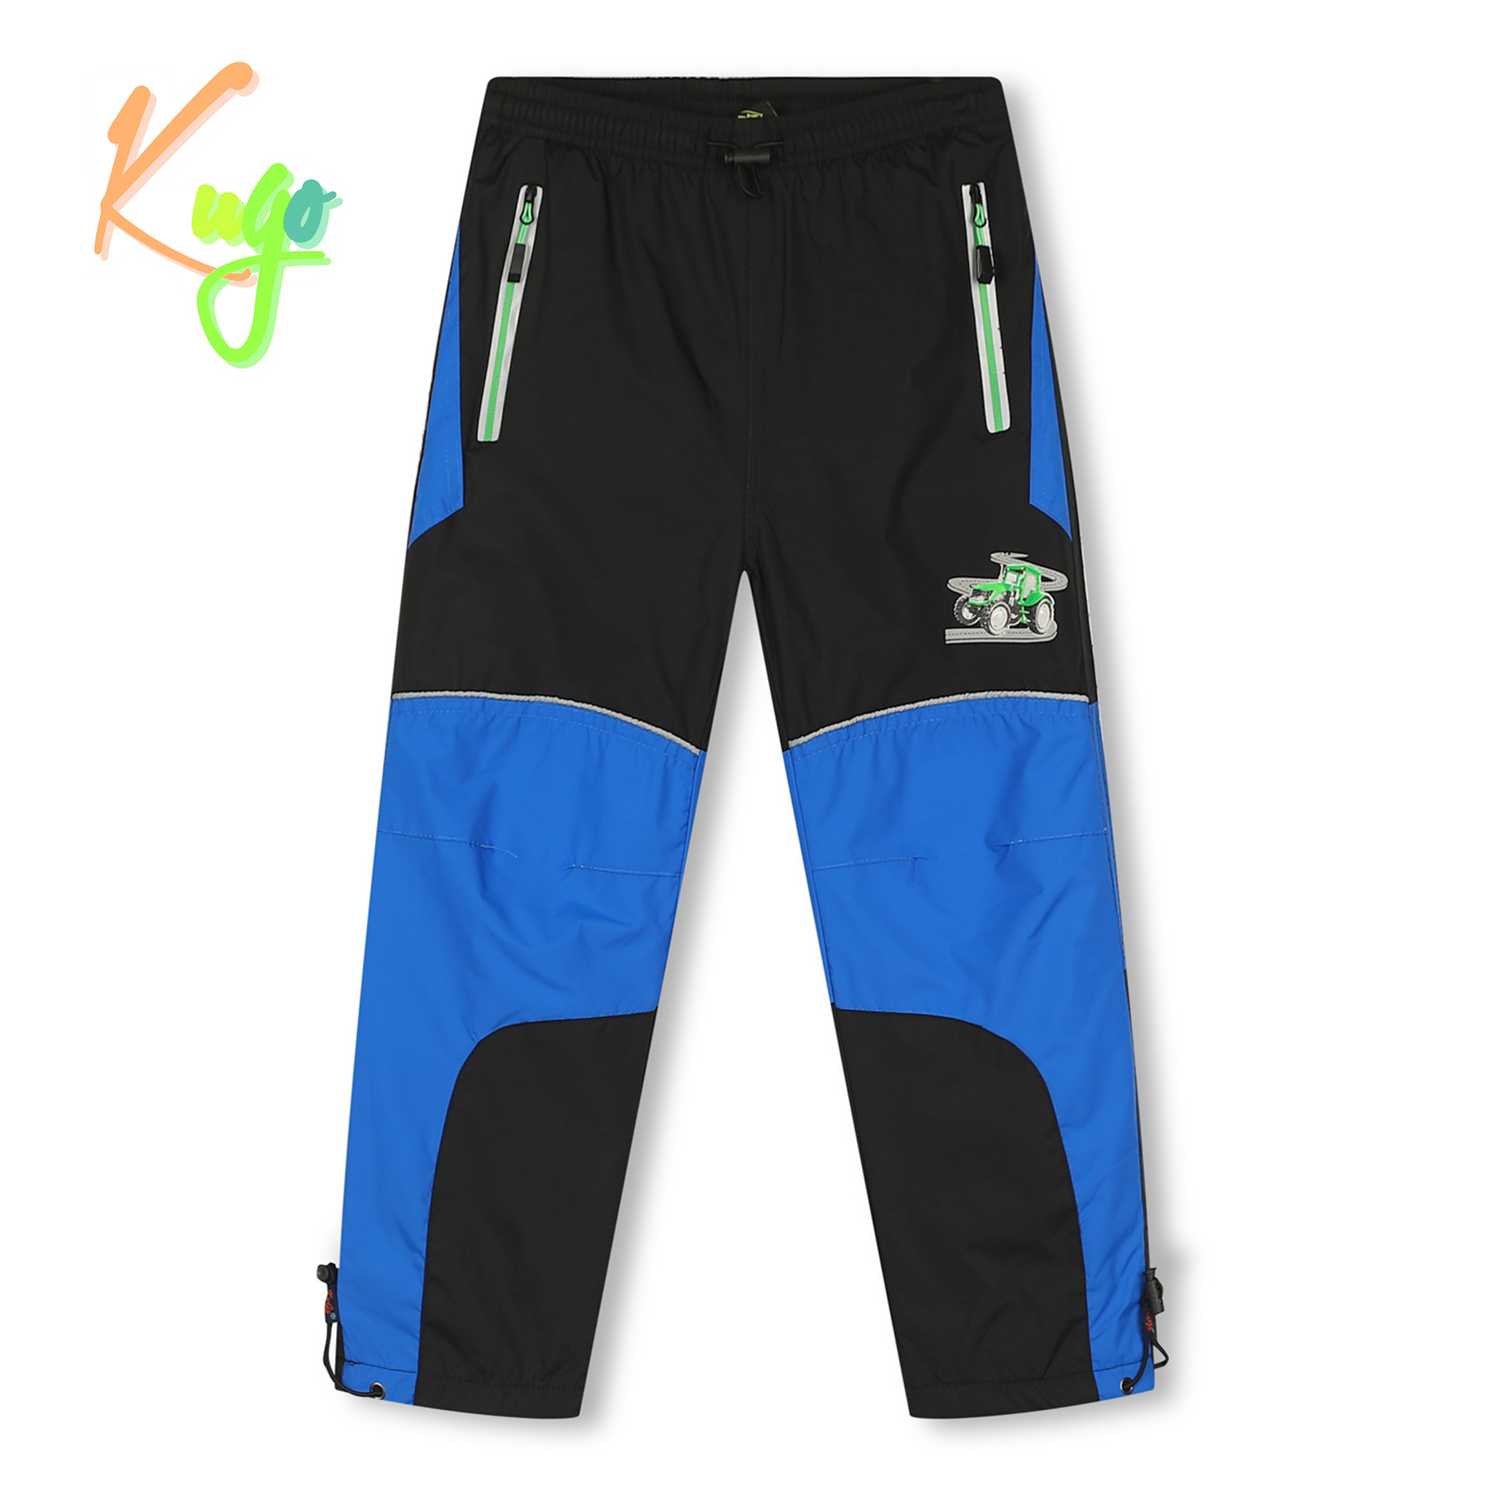 Chlapecké šusťákové kalhoty, zateplené - KUGO DK7126, černá/ zelený zip Barva: Černá, Velikost: 116